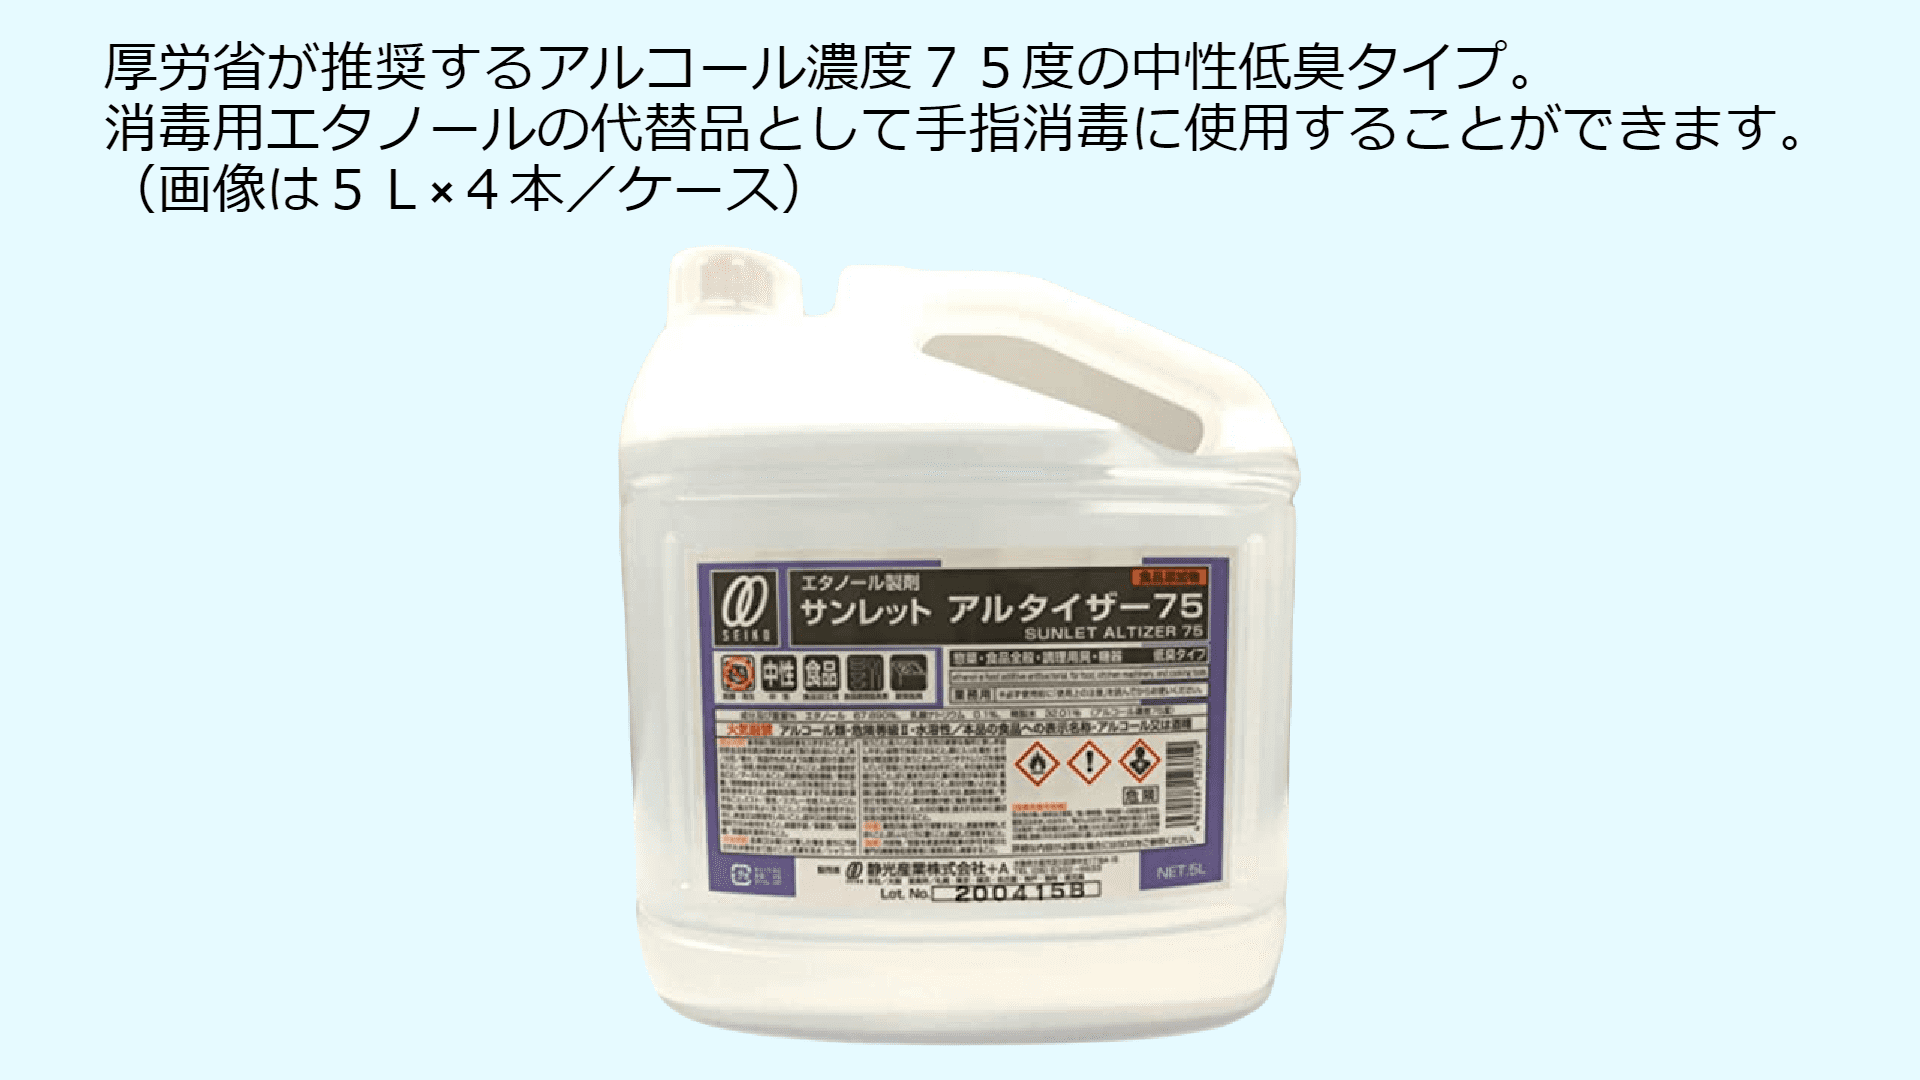 サンレットアルタイザー７５ 食品添加物・エタノール製剤 東京 埼玉 宮城 全国対応可